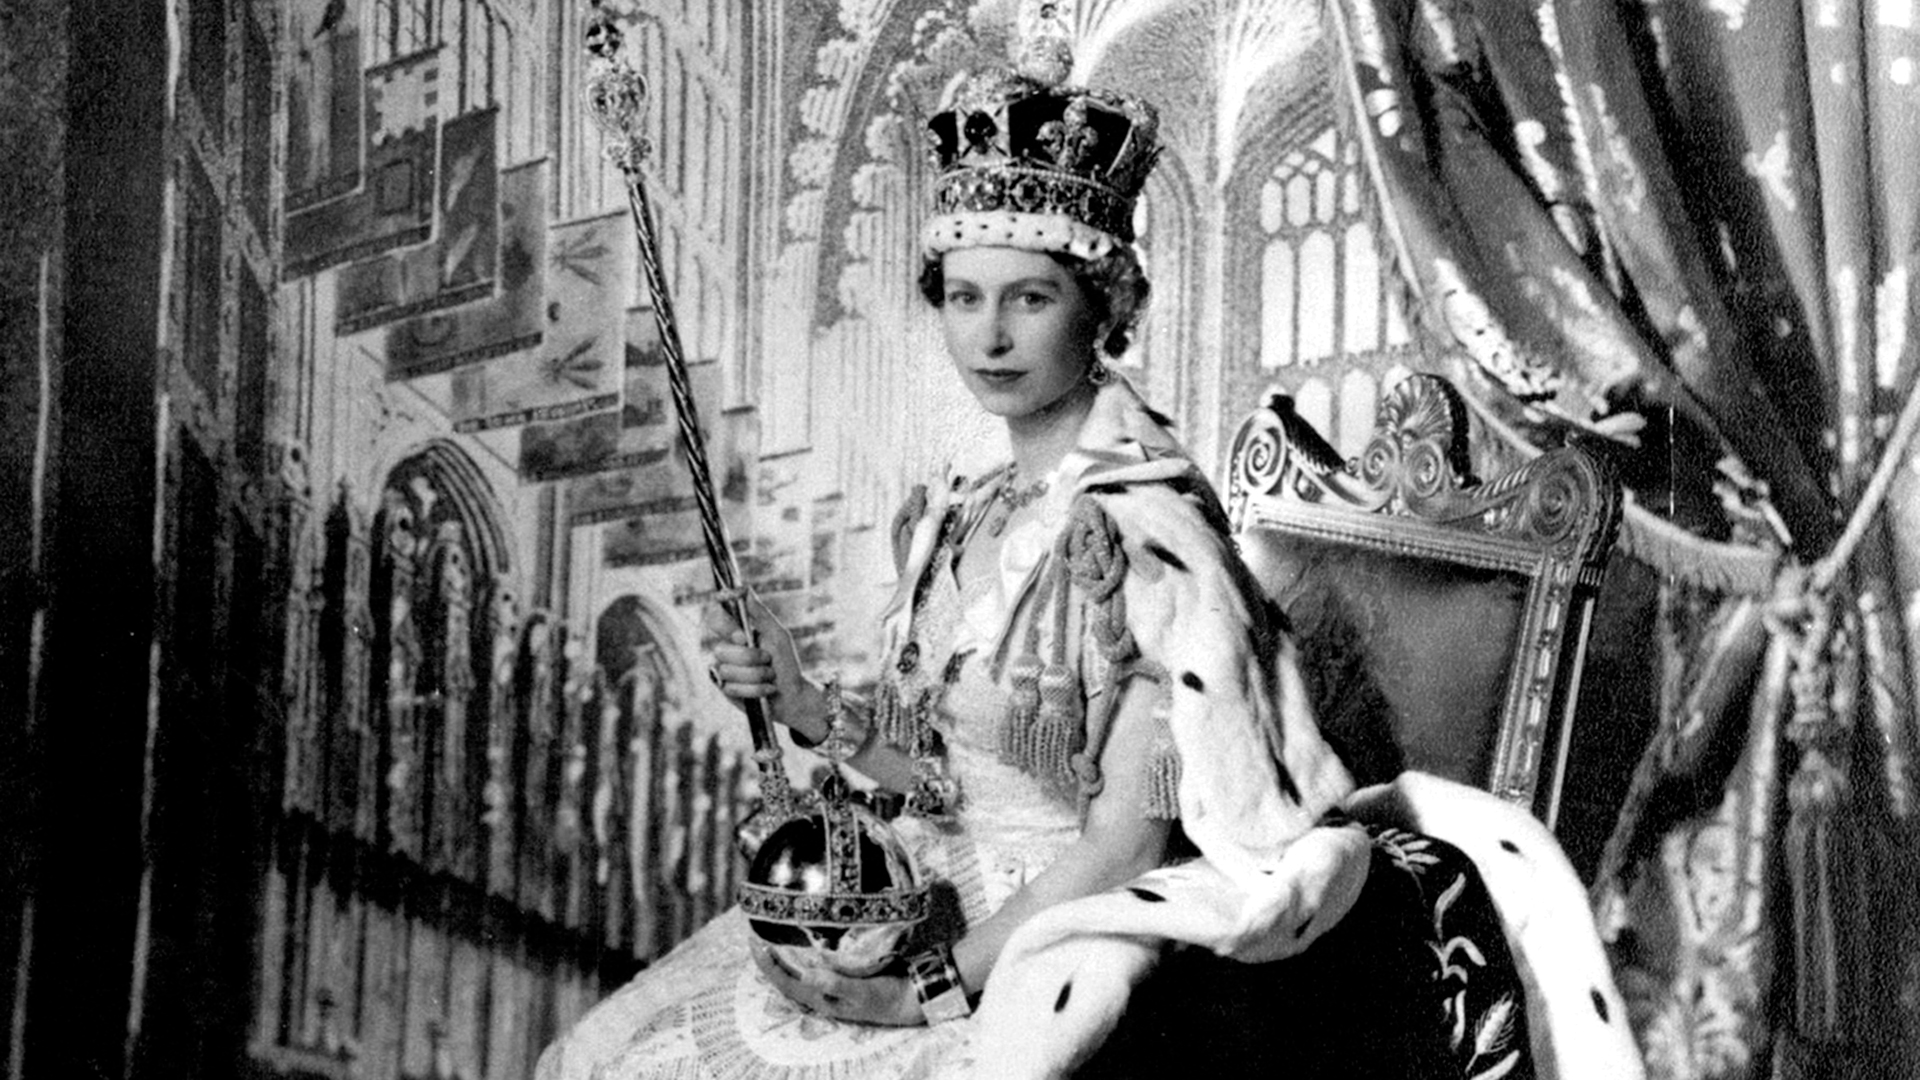 La reina Isabel II. En el Salón del Trono del Palacio de Buckingham tras su coronación: S.M. la Reina Isabel II posó para esta fotografía realizada por Cecil Beaton, en el Salón del Trono del Palacio de Buckingham tras su Coronación el 2 de junio de 1953. Está vestida con su traje de Coronación y su túnica de terciopelo púrpura. Sobre su cabeza lleva la Corona Imperial de Estado. En su mano izquierda lleva el Orbe y en la derecha el Cetro con Cruz. En sus muñecas lleva los Brazaletes de la Sinceridad. (The Grosby Group)